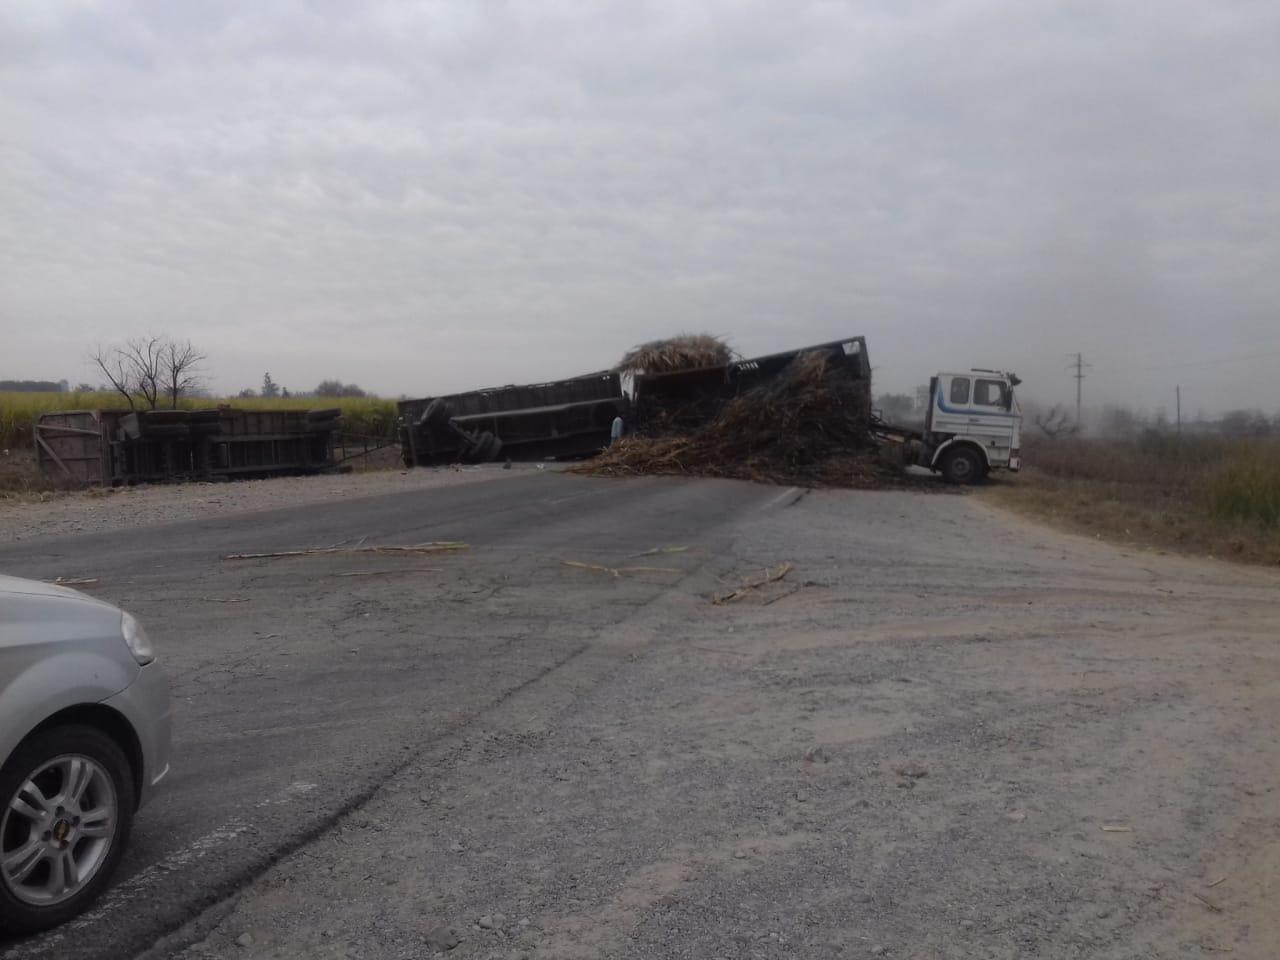 SOBRE LA RUTA. Uno de los camiones quedó atravesado en la carretera. Foto: LG WhatsApp.